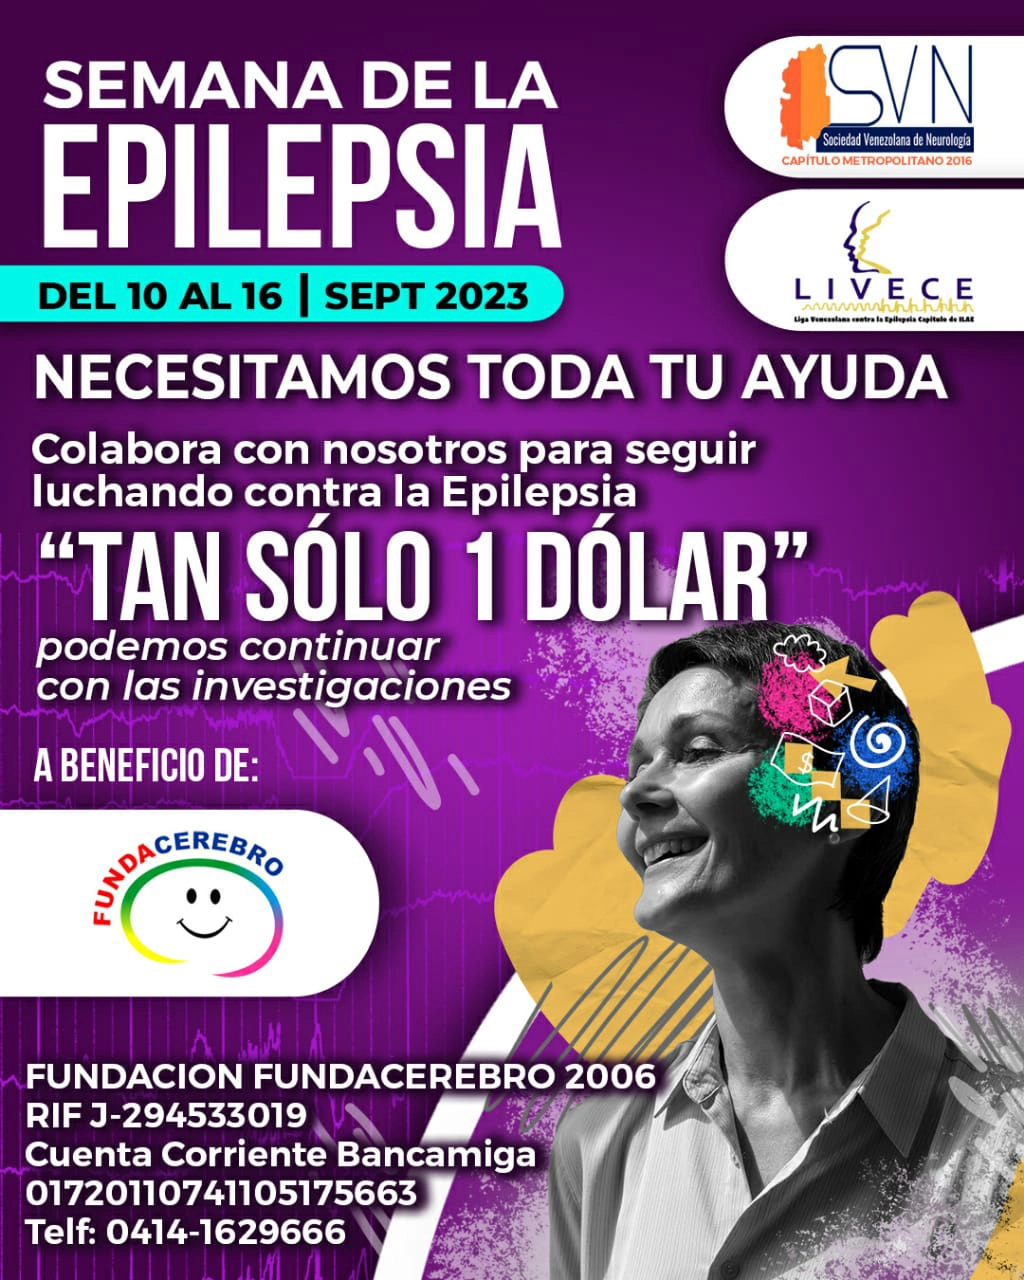 Semana Epilepsia 2023 - Tan solo un dólar